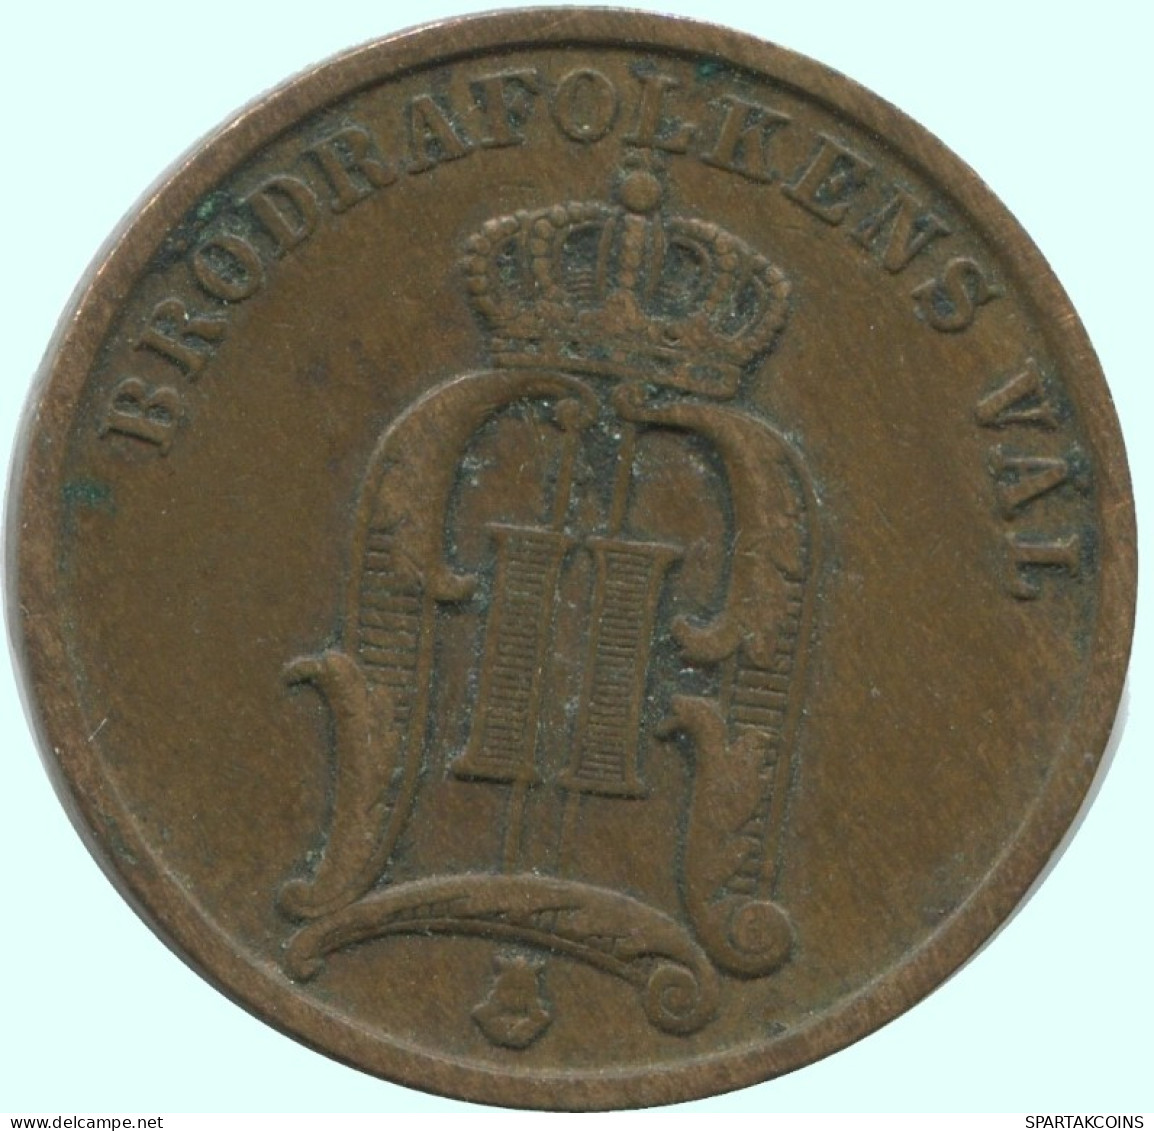 2 ORE 1902 SUECIA SWEDEN Moneda #AC934.2.E.A - Schweden